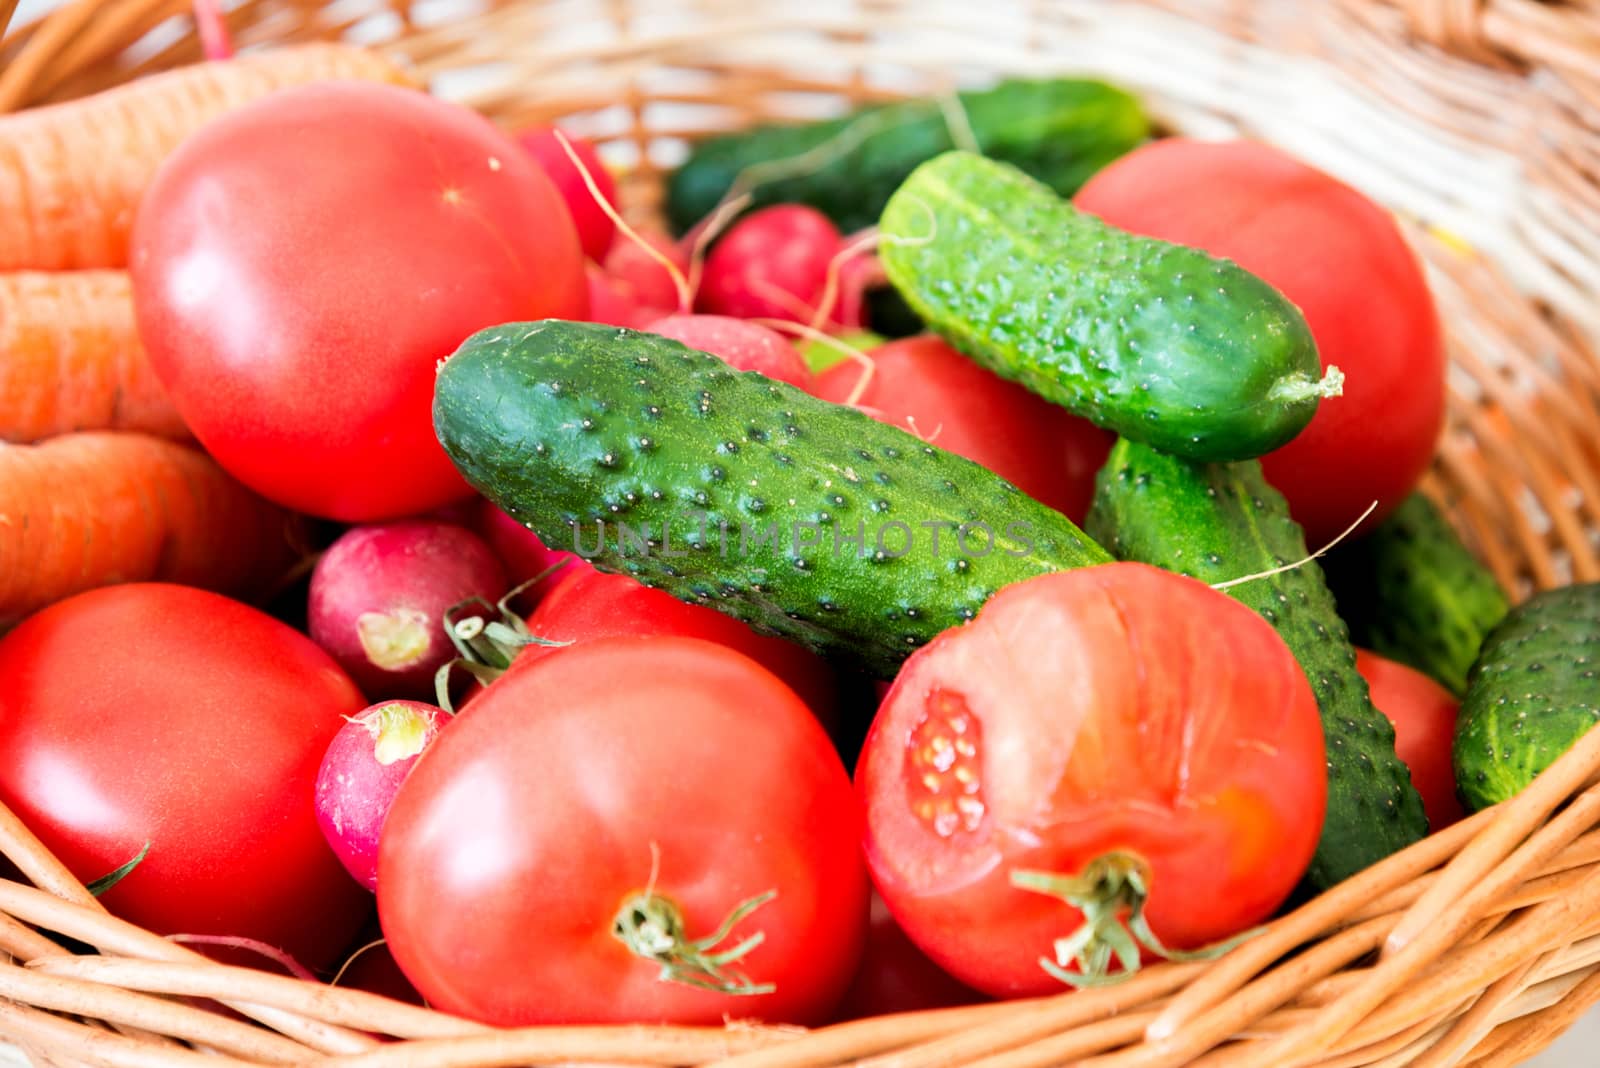 Mix of vegetables in basket by vlaru